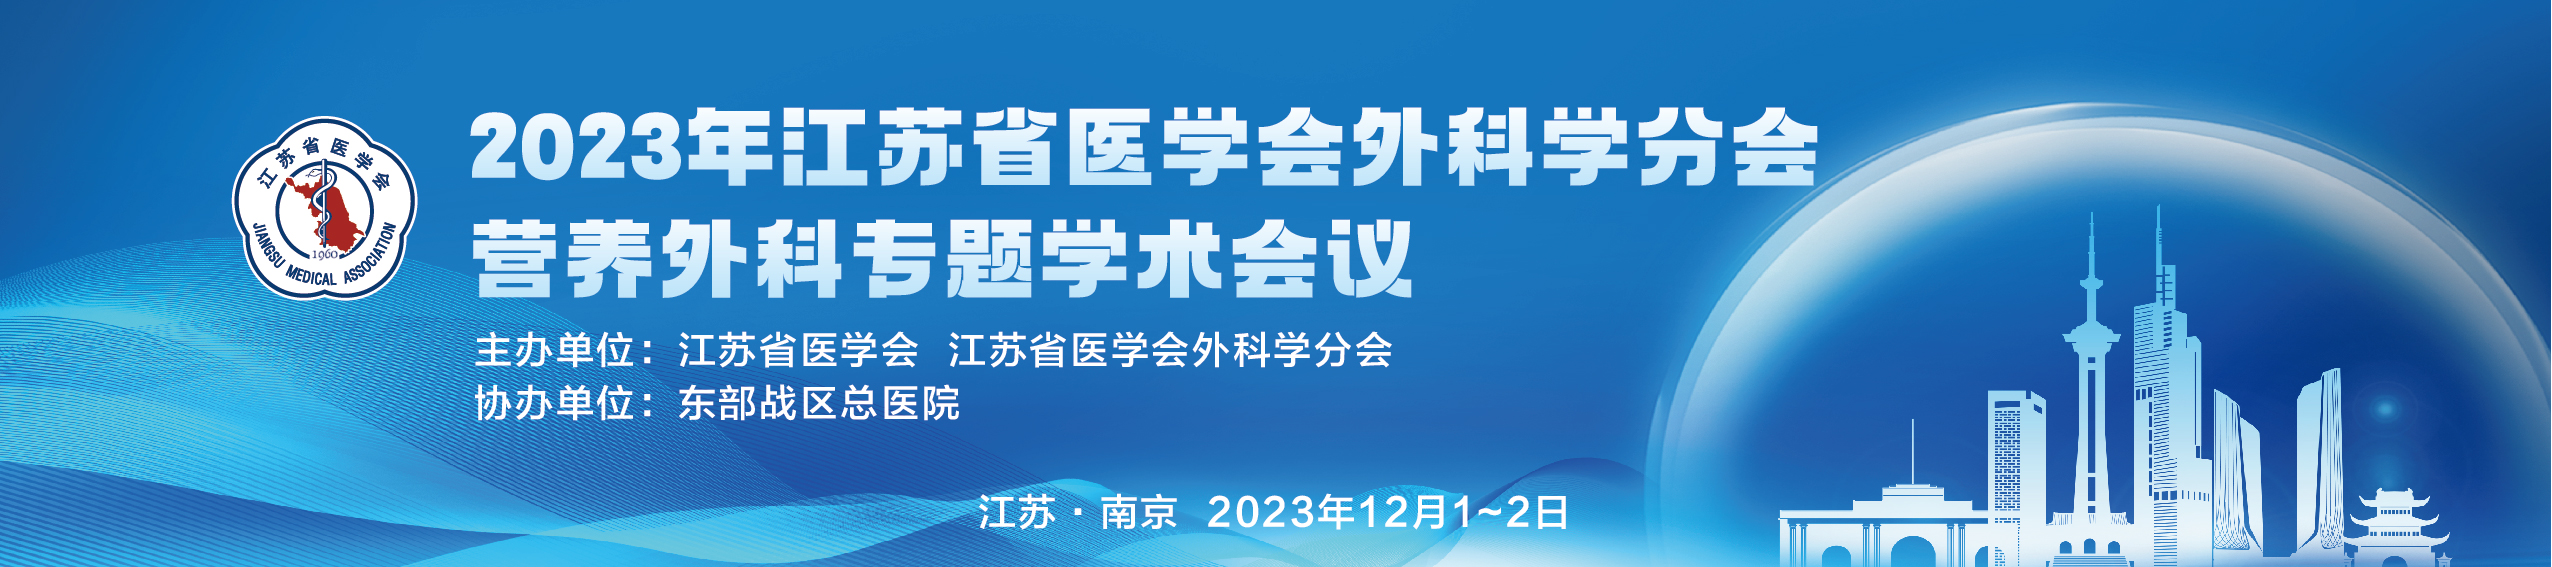 2023年江苏省医学会外科学分会营养外科专题学术会议